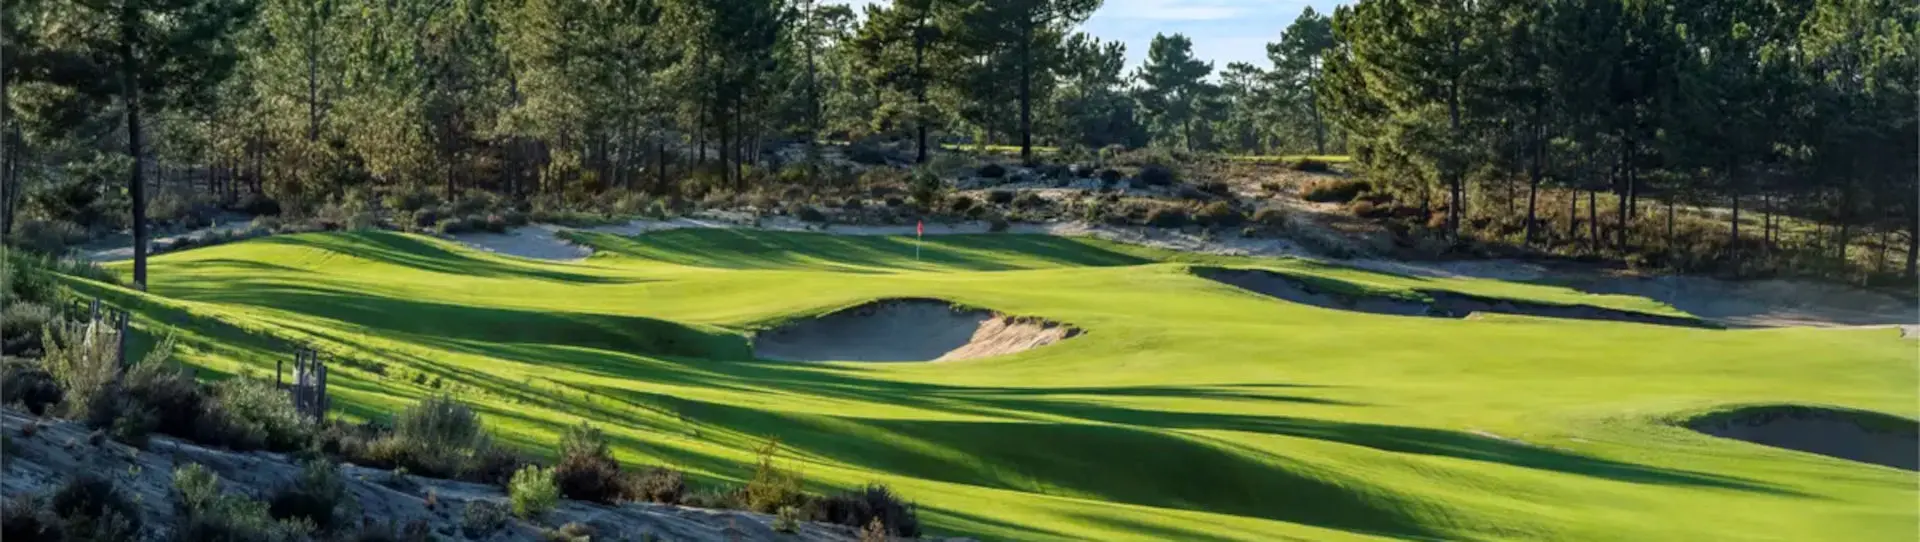 Portugal golf courses - Dunas Terras da Comporta - Photo 3